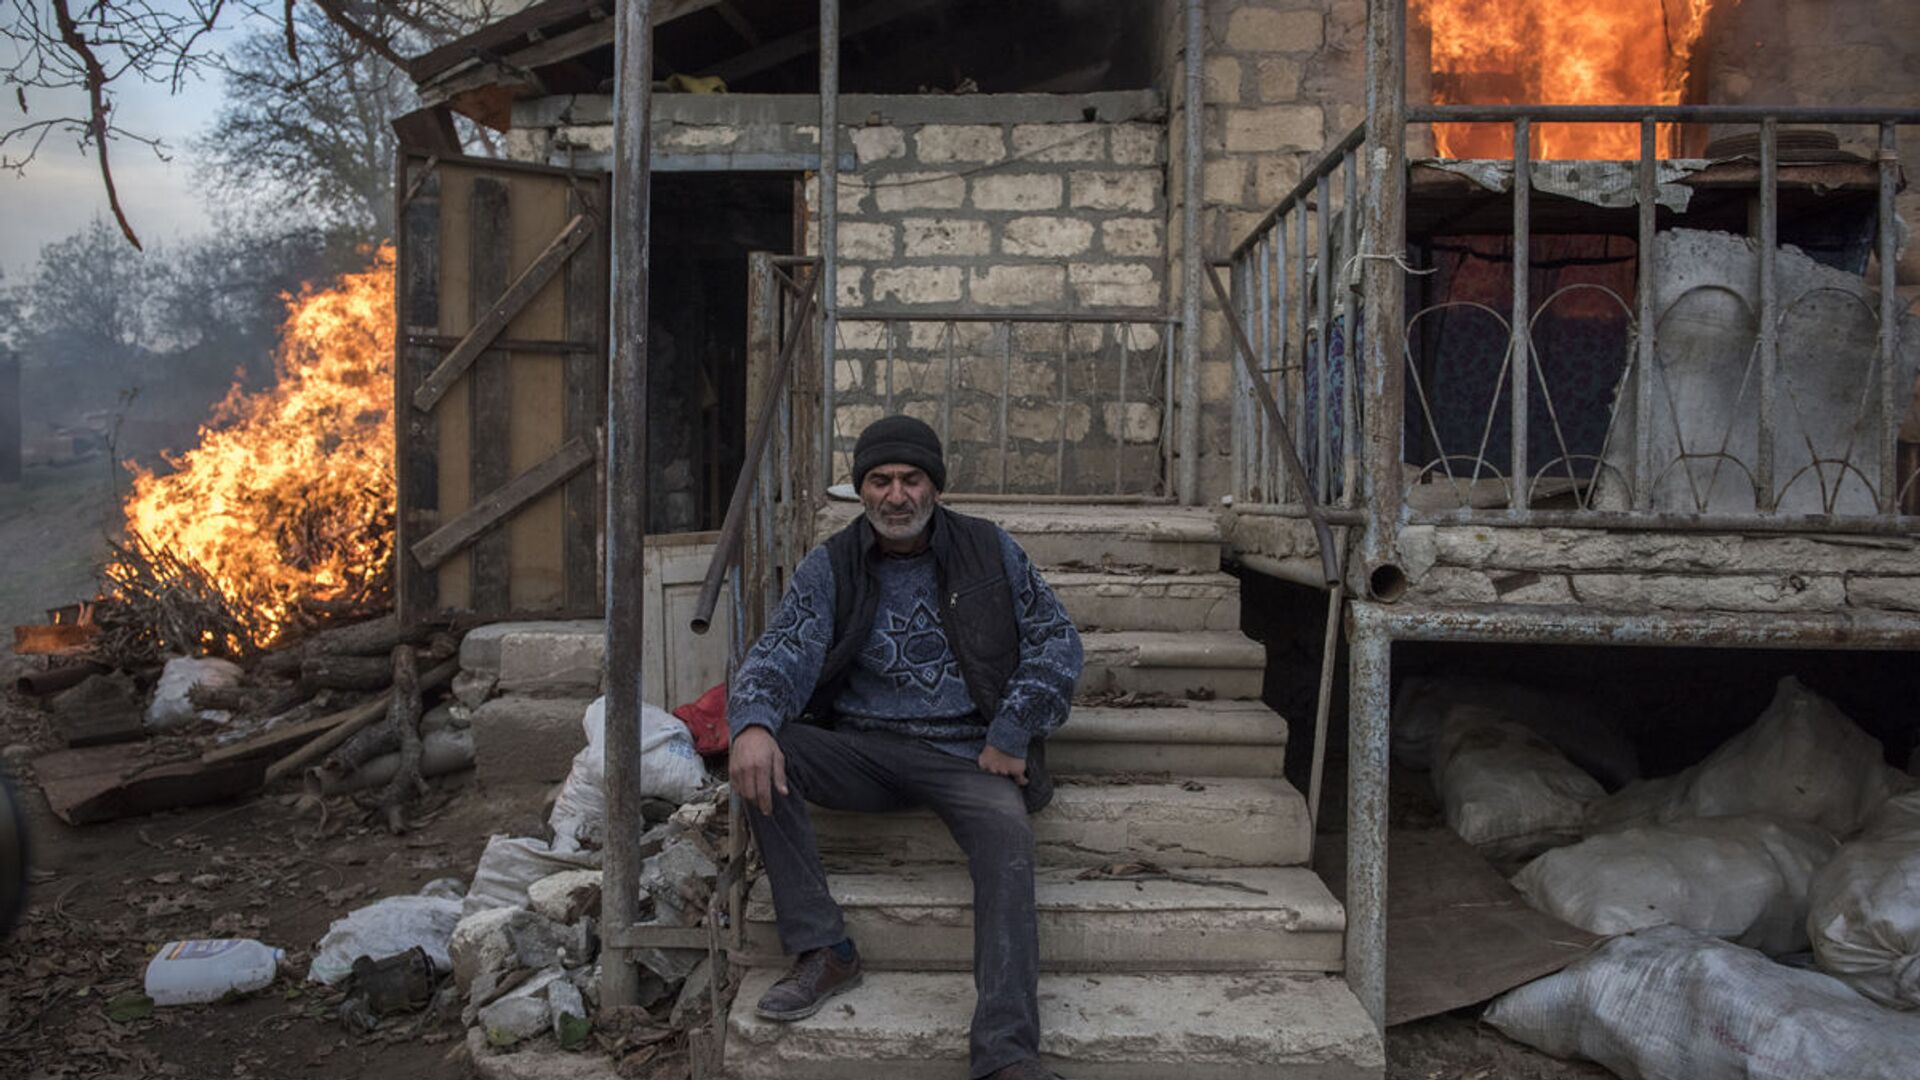 Местный житель Арег сидит у горящего дома в поселке Карегах, Нагорный Карабах. Некоторые жители сожгли свои дома перед тем как уйти - Sputnik Беларусь, 1920, 26.11.2021